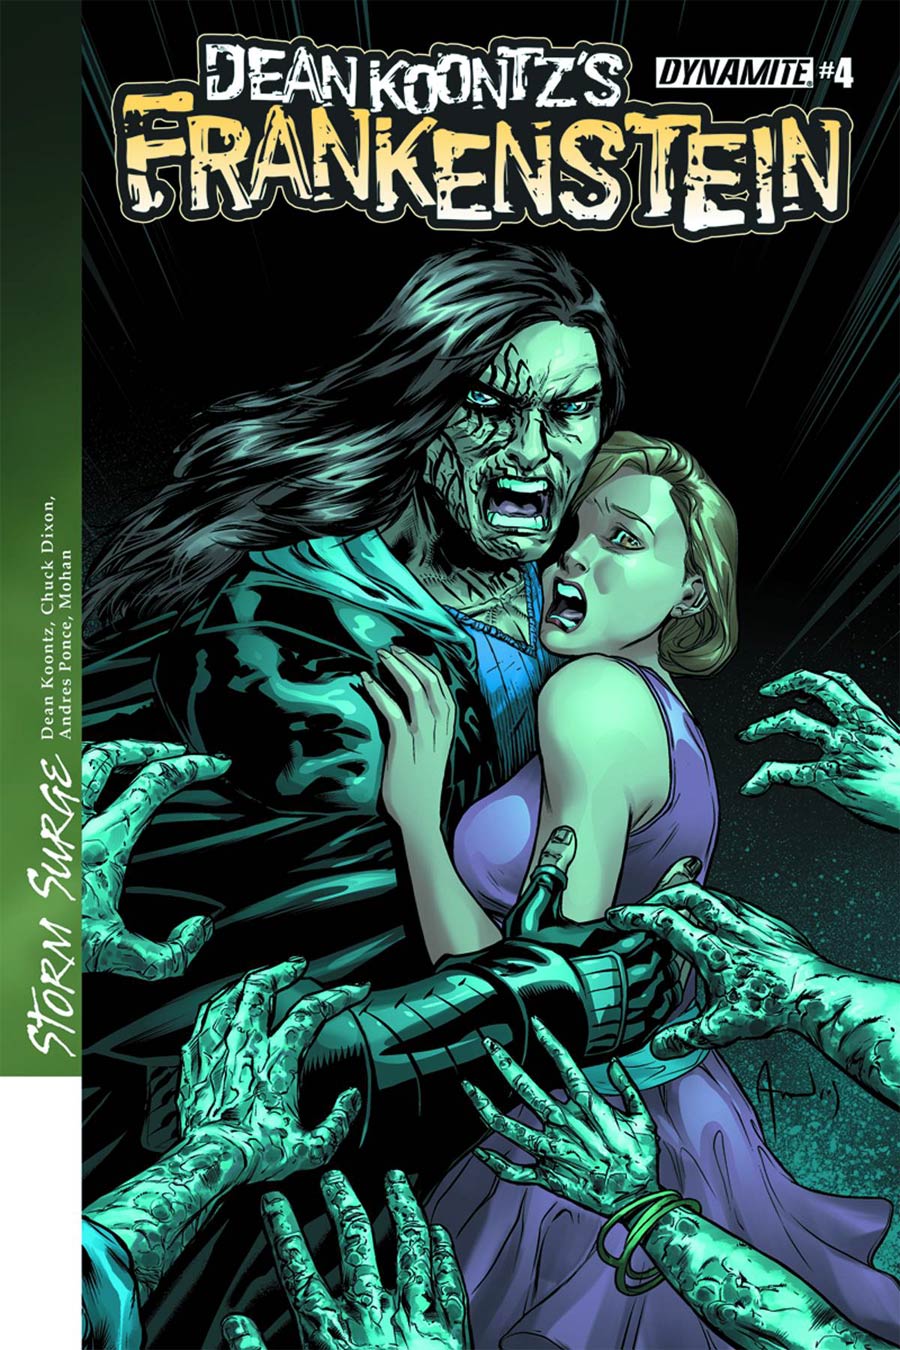 Dean Koontzs Frankenstein Storm Surge #4